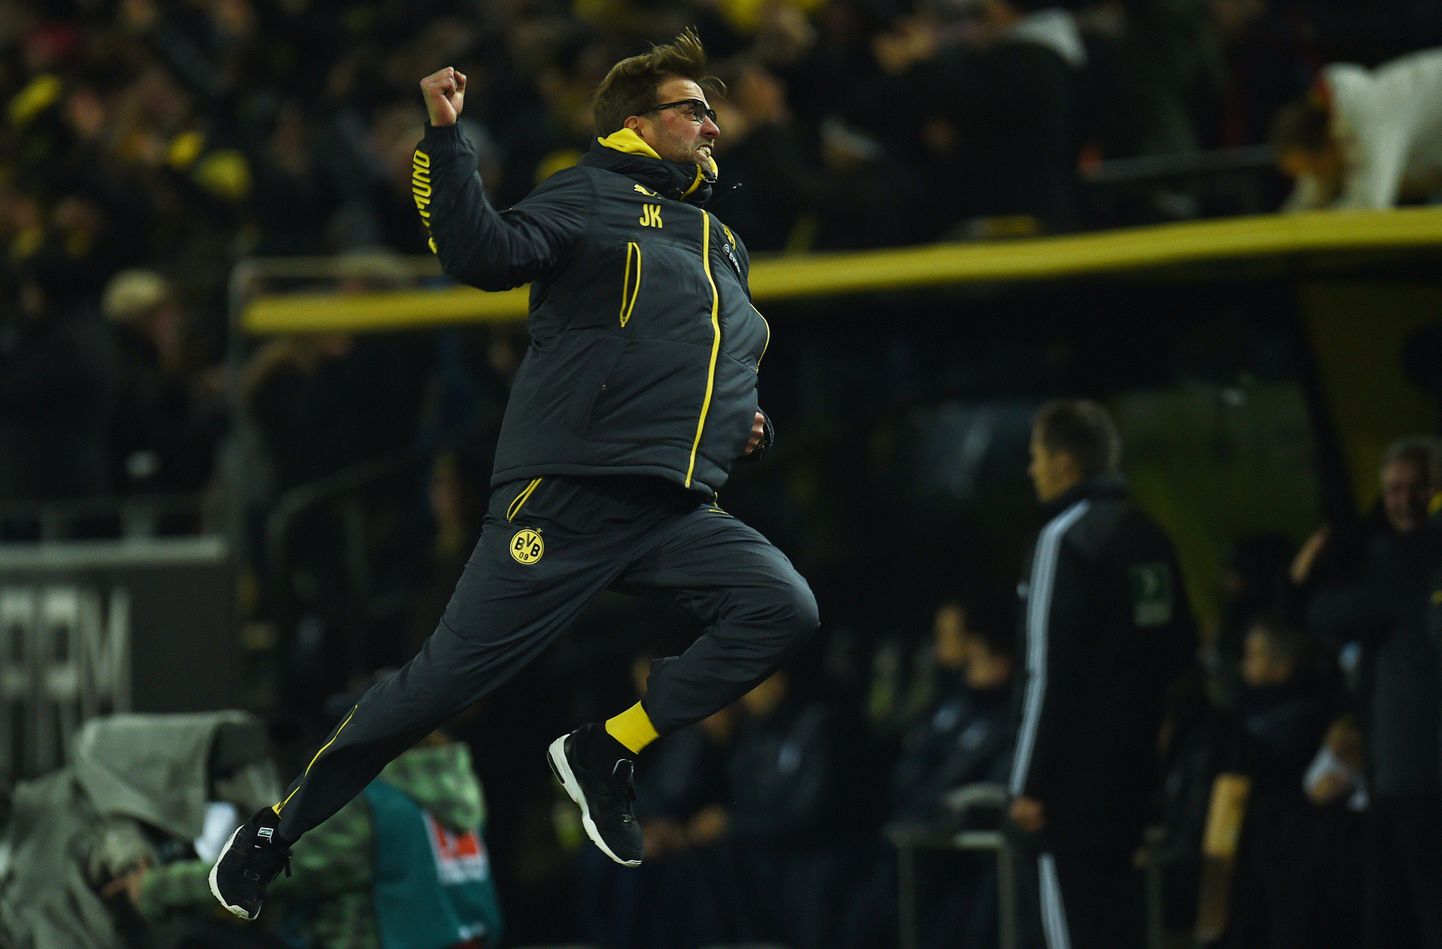 Dortmundi peatreener Jürgen Klopp rõõmustab värava üle.